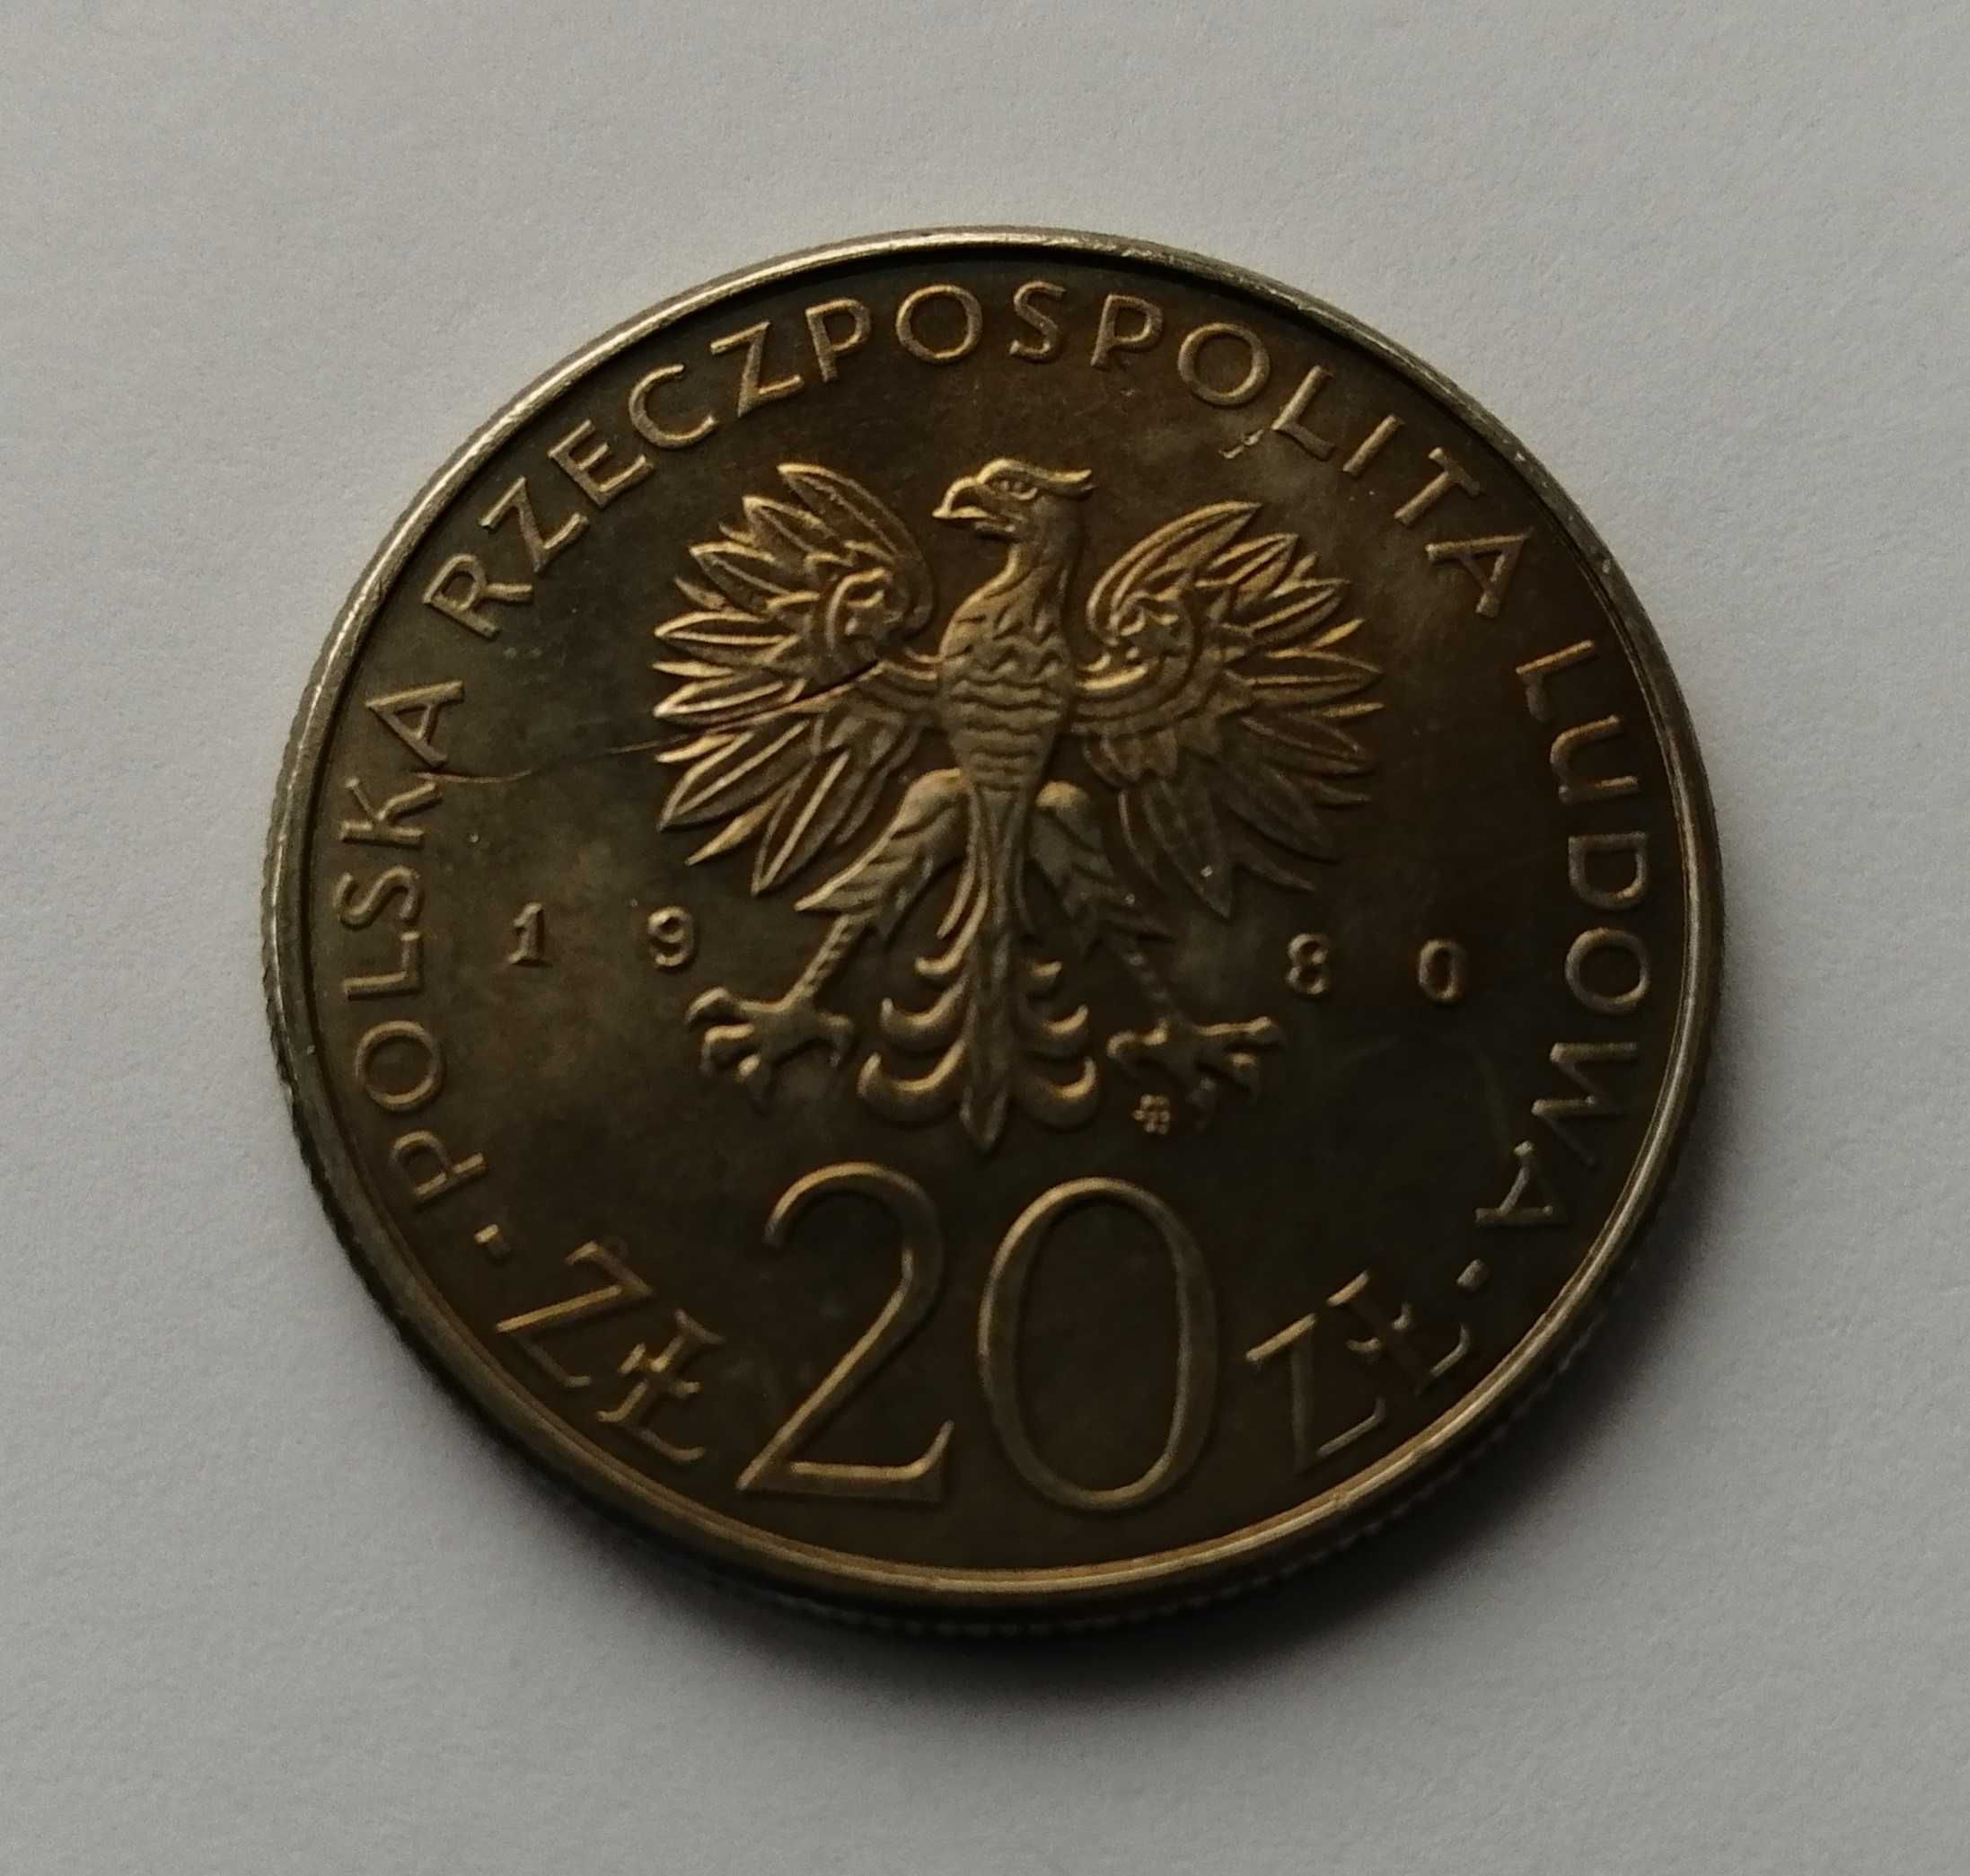 Moneta - 20 złotych 1980 rok. Dar Pomorza